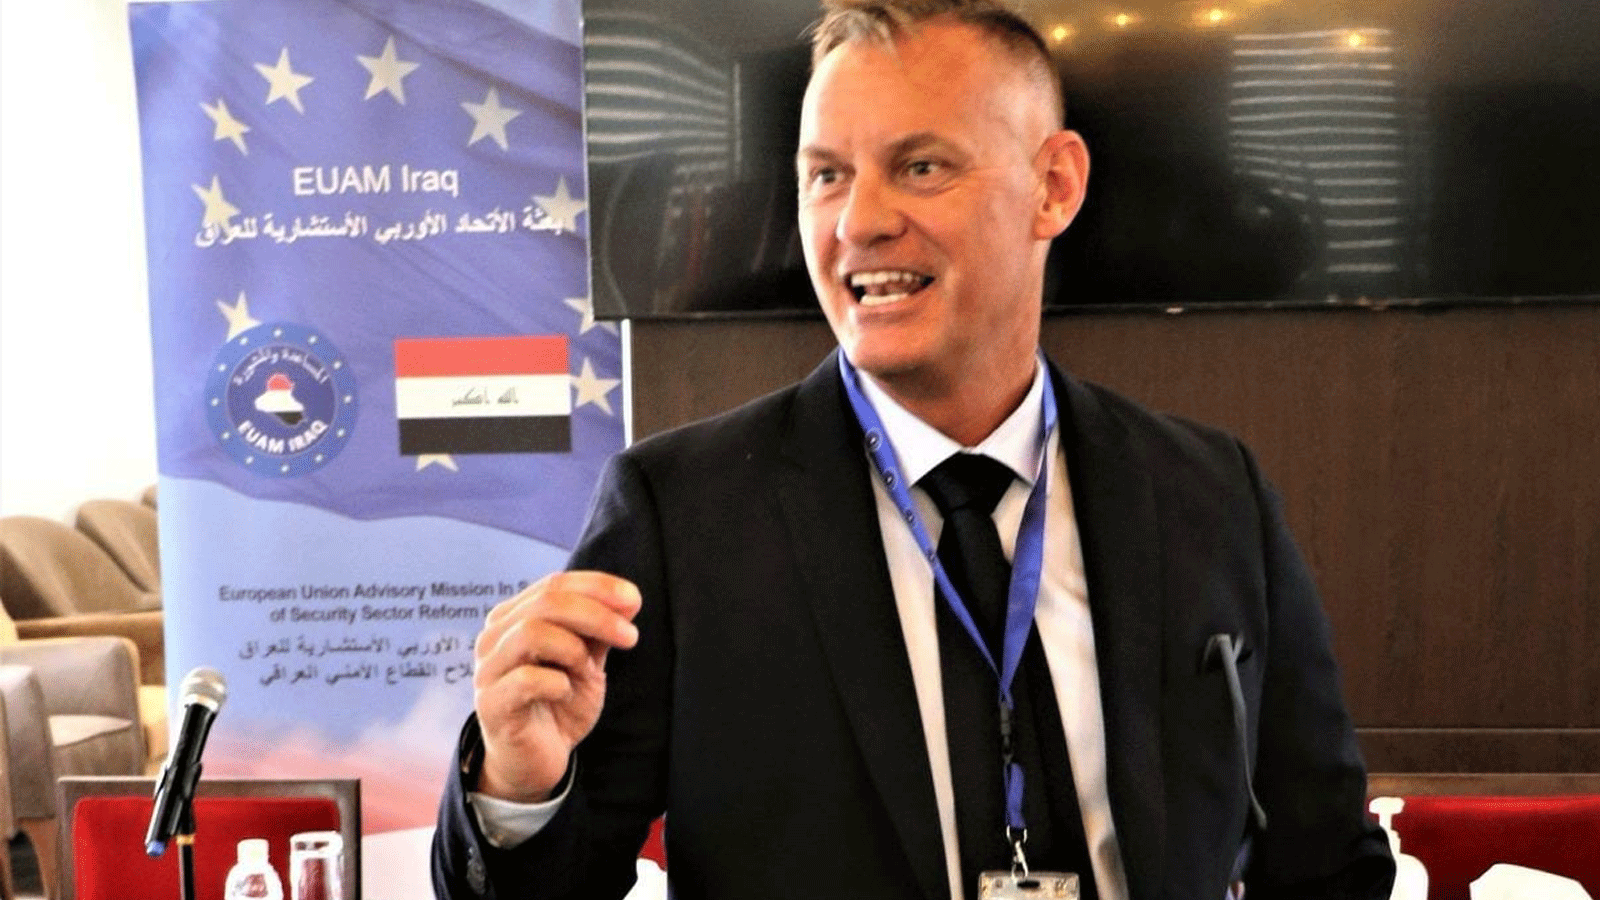 ضابط الشرطة السويدي اندرياس فيباري الذي تم الإعلان الاحد 21 آب\ اغسطس 2022 عن مباشرته مهامه كرئيس جديد لبعثة الاتحاد الأوروبي في العراق (البعثة)